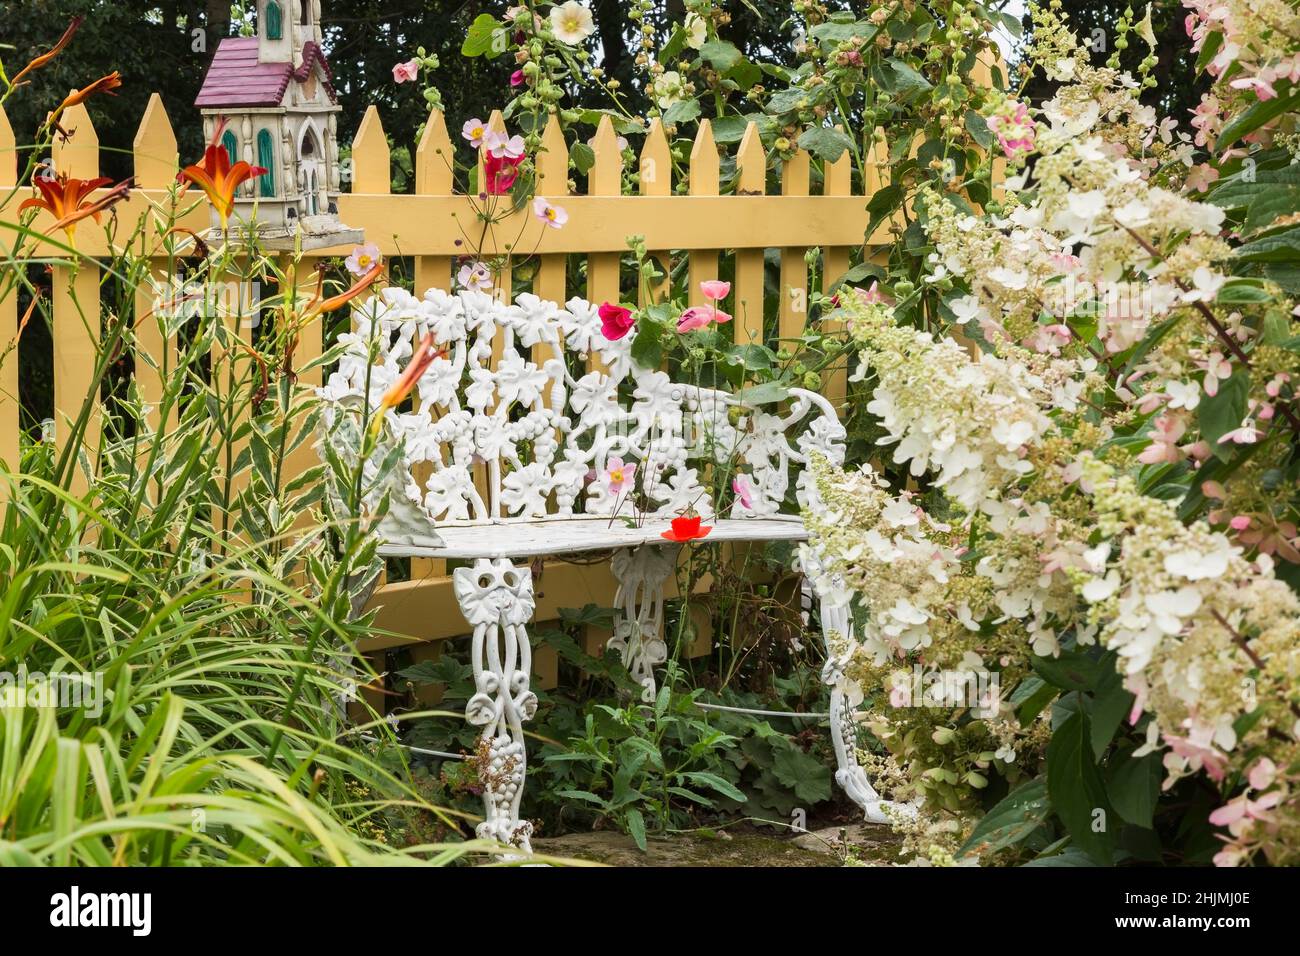 Weiß bemalte gusseiserne Sitzbank im viktorianischen Stil, umrandet von roten Papaver - Poppy, Alcea rosea - Hollyhock Blumen im Vorhof Landgarten. Stockfoto